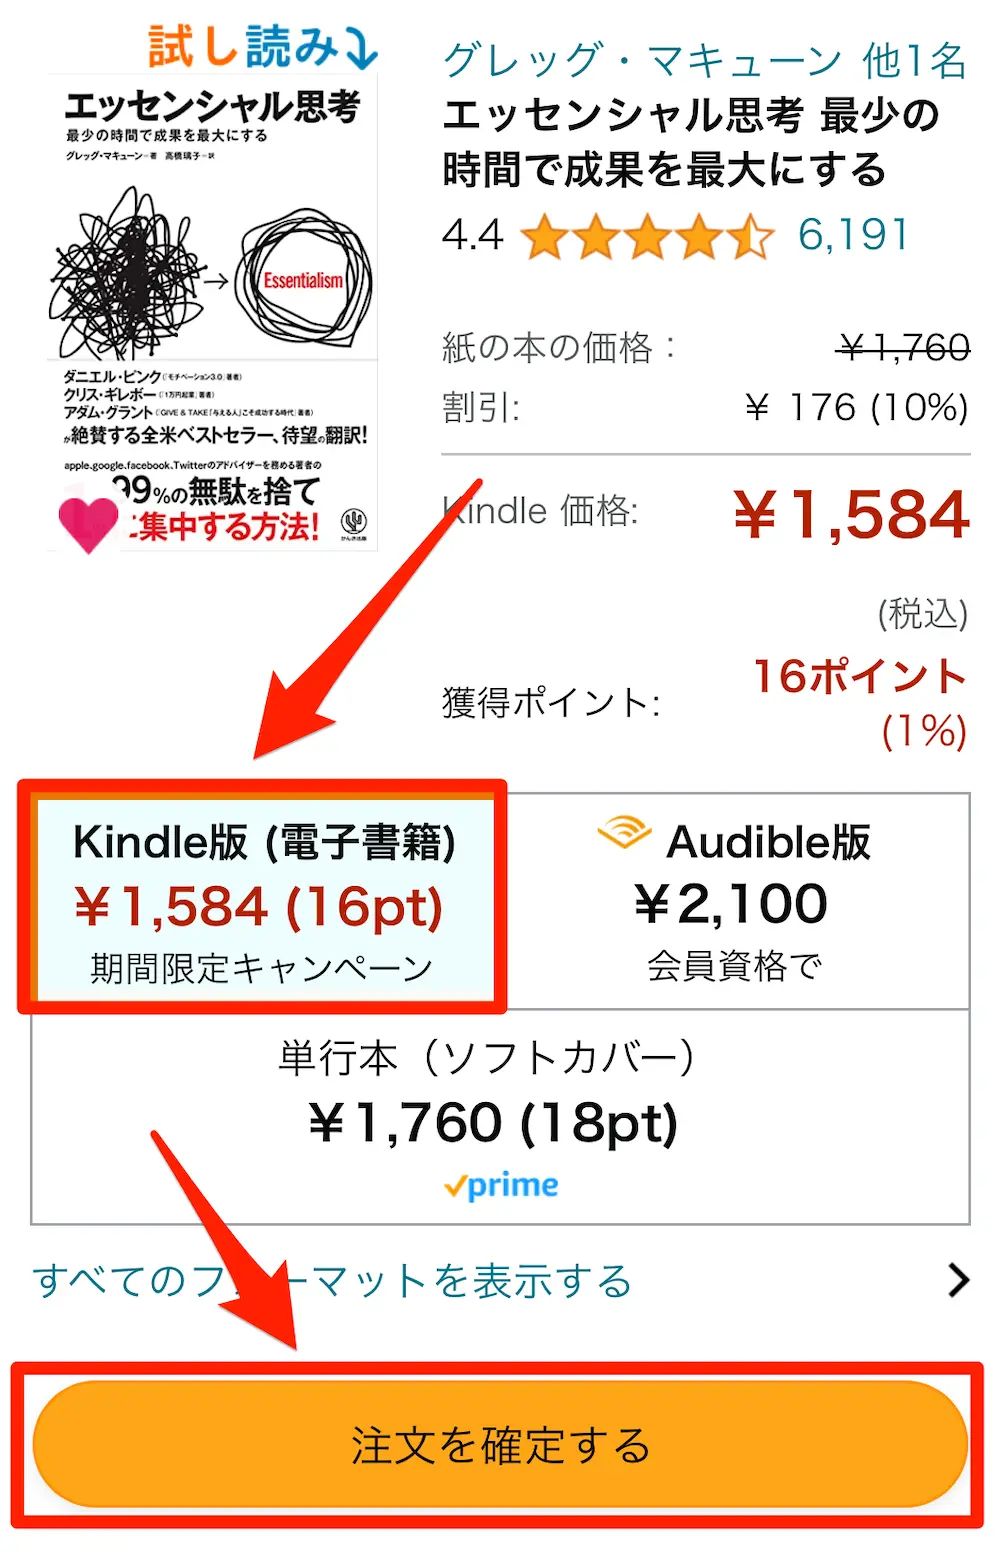 【スマホ】Kindle本購入画面